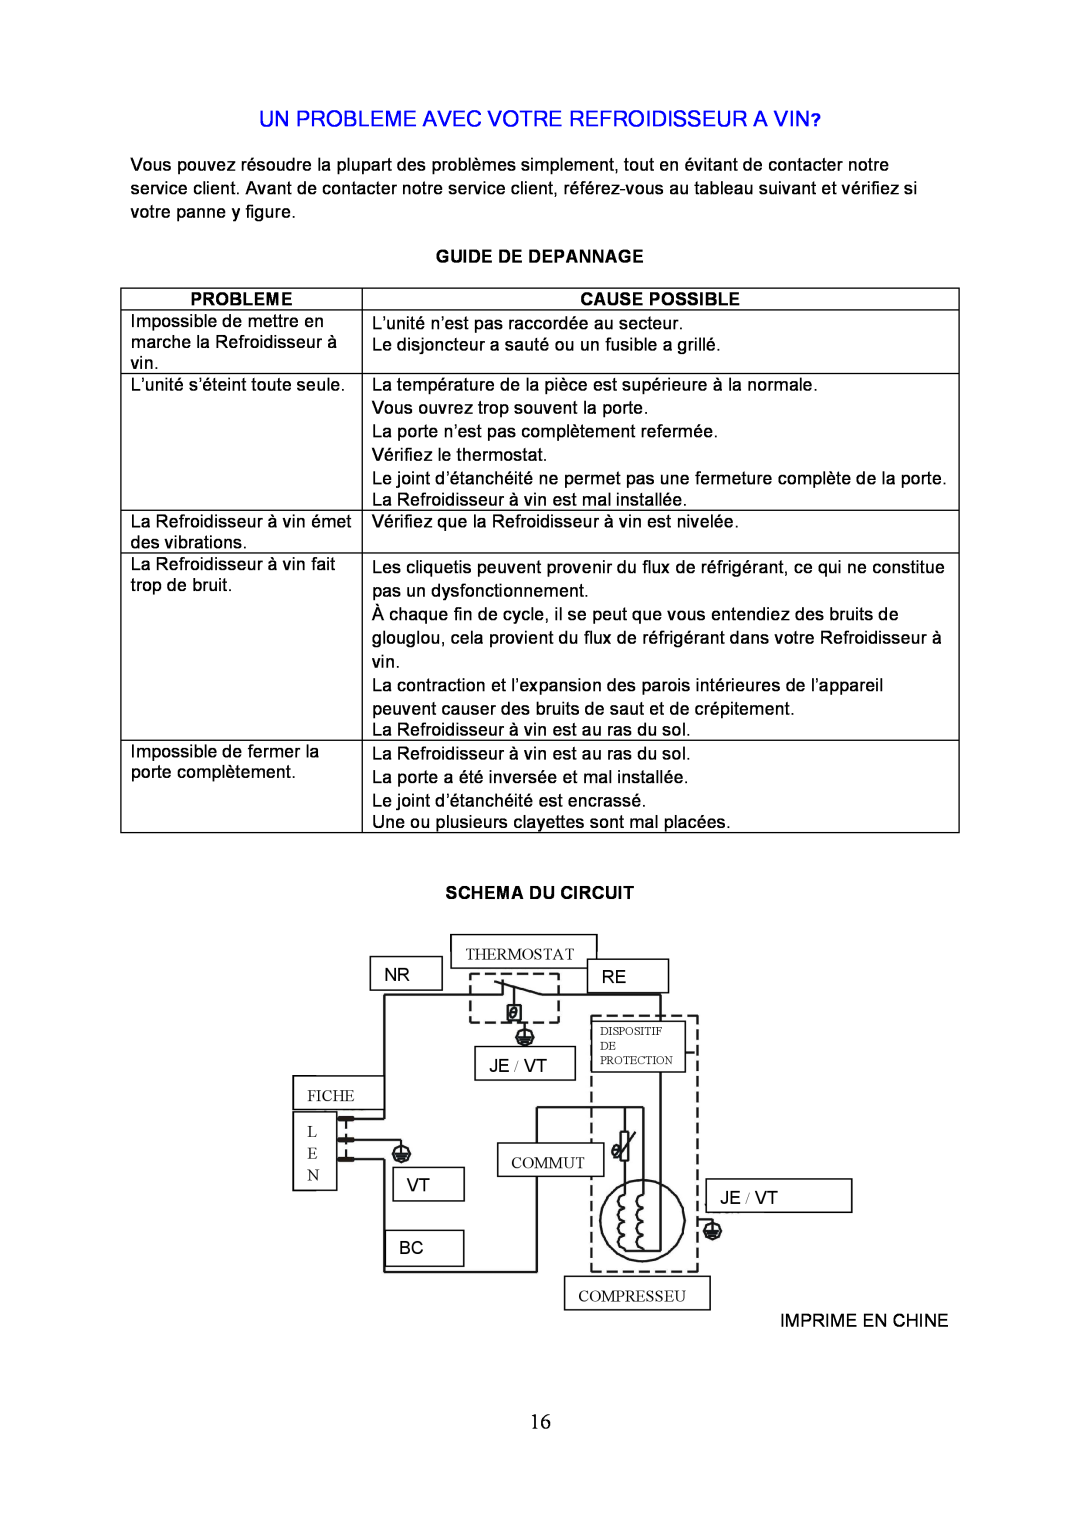 Igloo FRW154C Un Probleme Avec Votre Refroidisseur A Vin?, Guide De Depannage, Cause Possible, Schema Du Circuit 